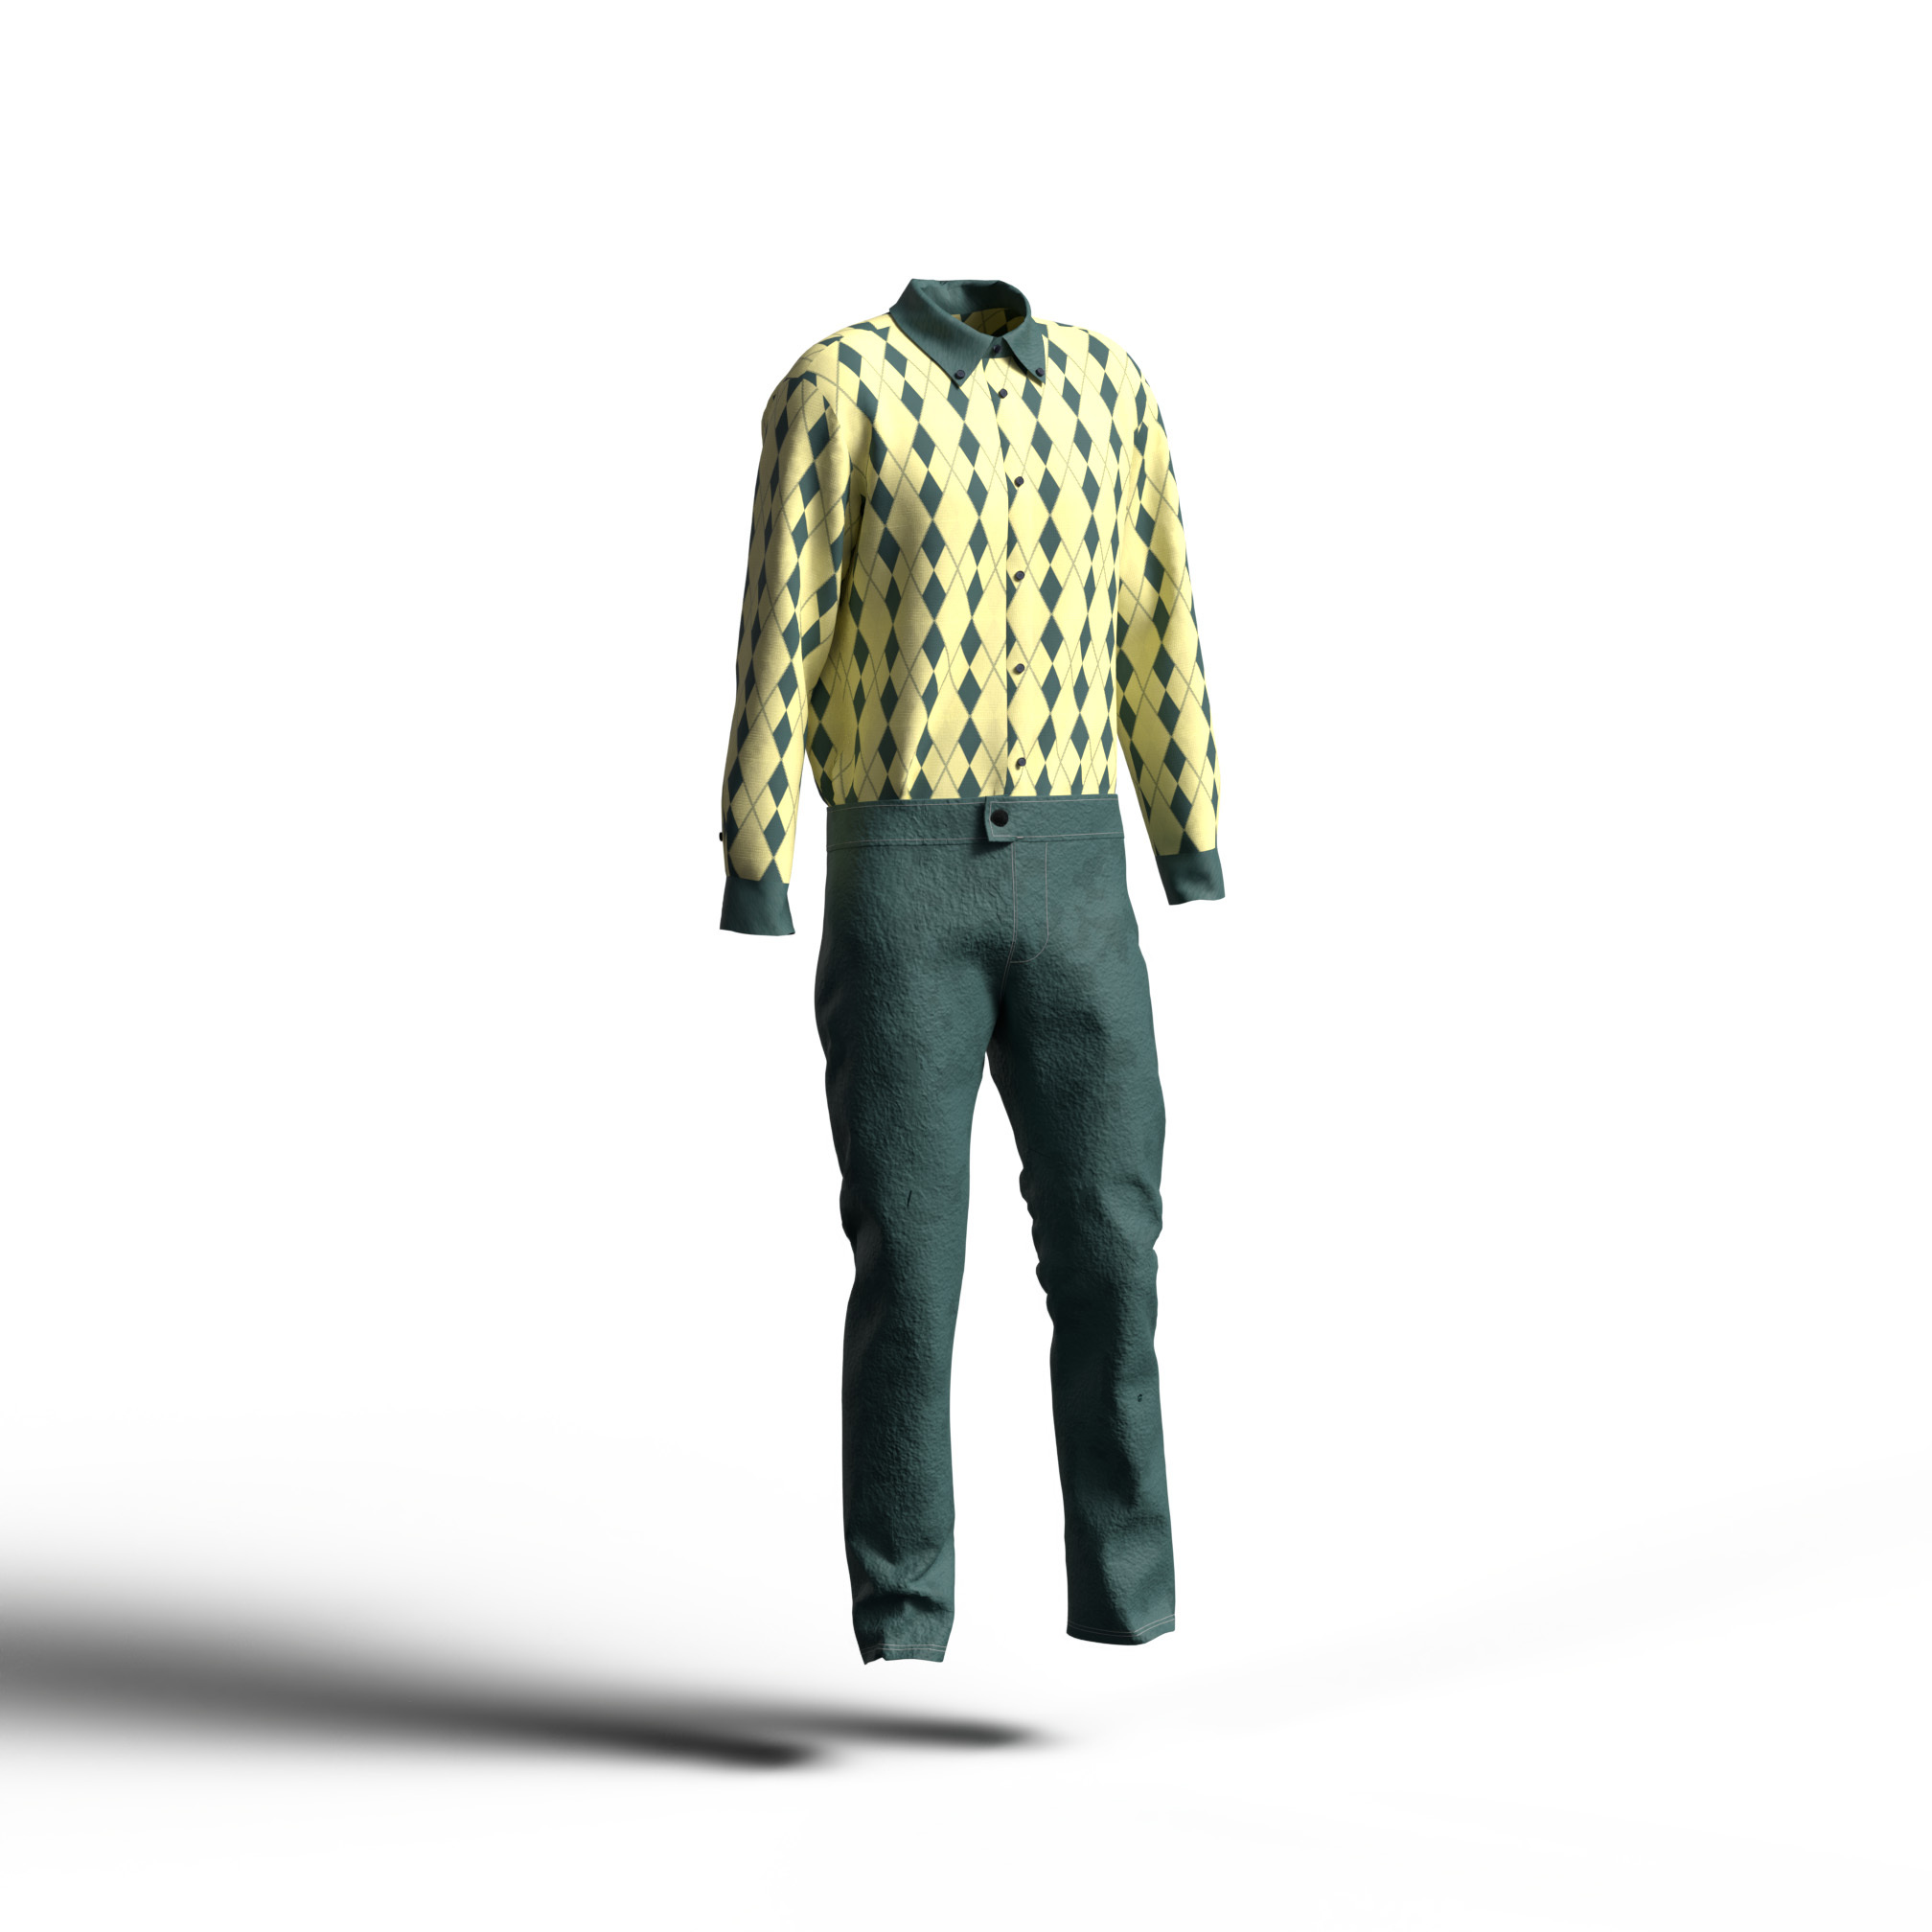 ダークグリーン×イエローシャツ＋ダークグリーンの迷彩模様パンツのカラーコーディネート。カジュアルなカラーイメージ。